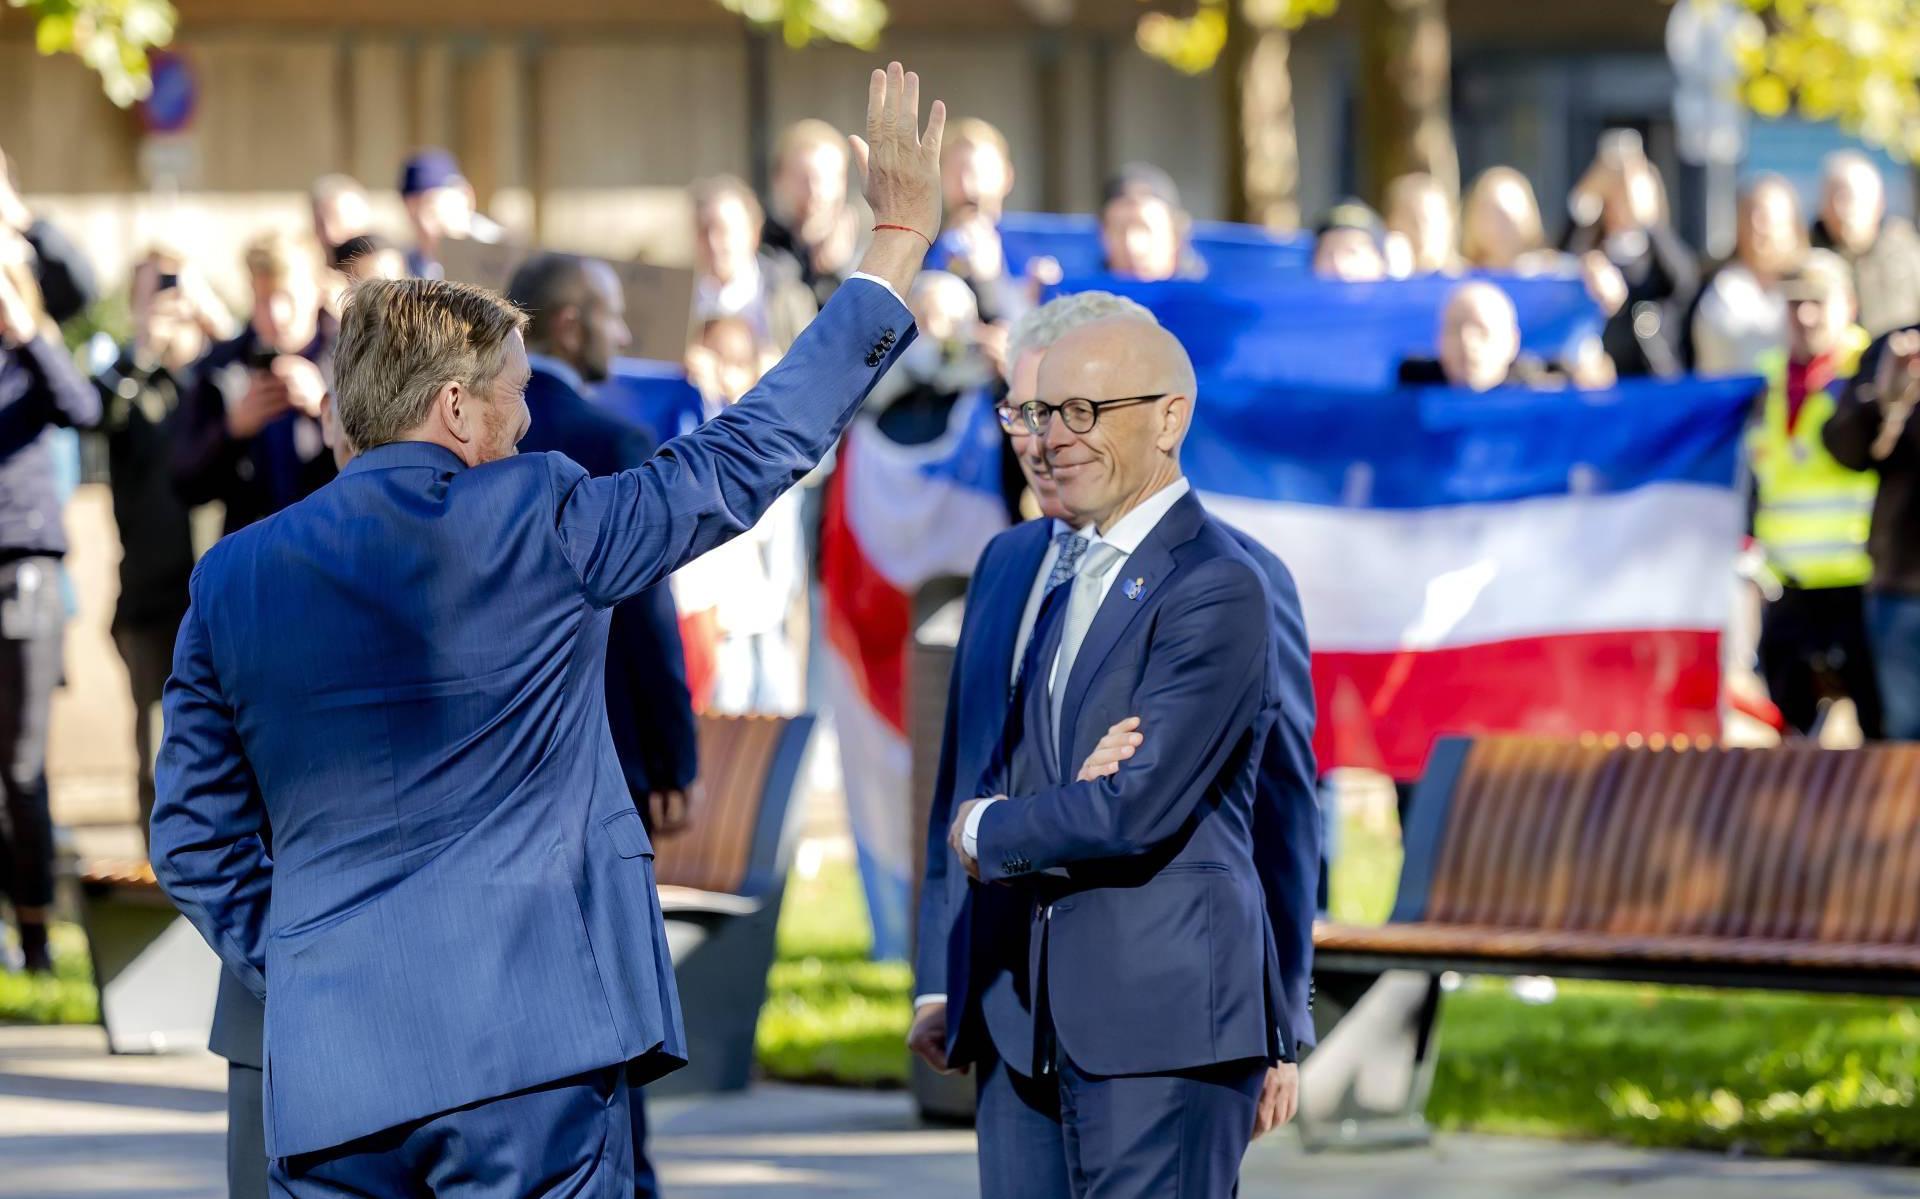 Koning Willem-Alexander uitgejouwd tijdens opening Radboudumc